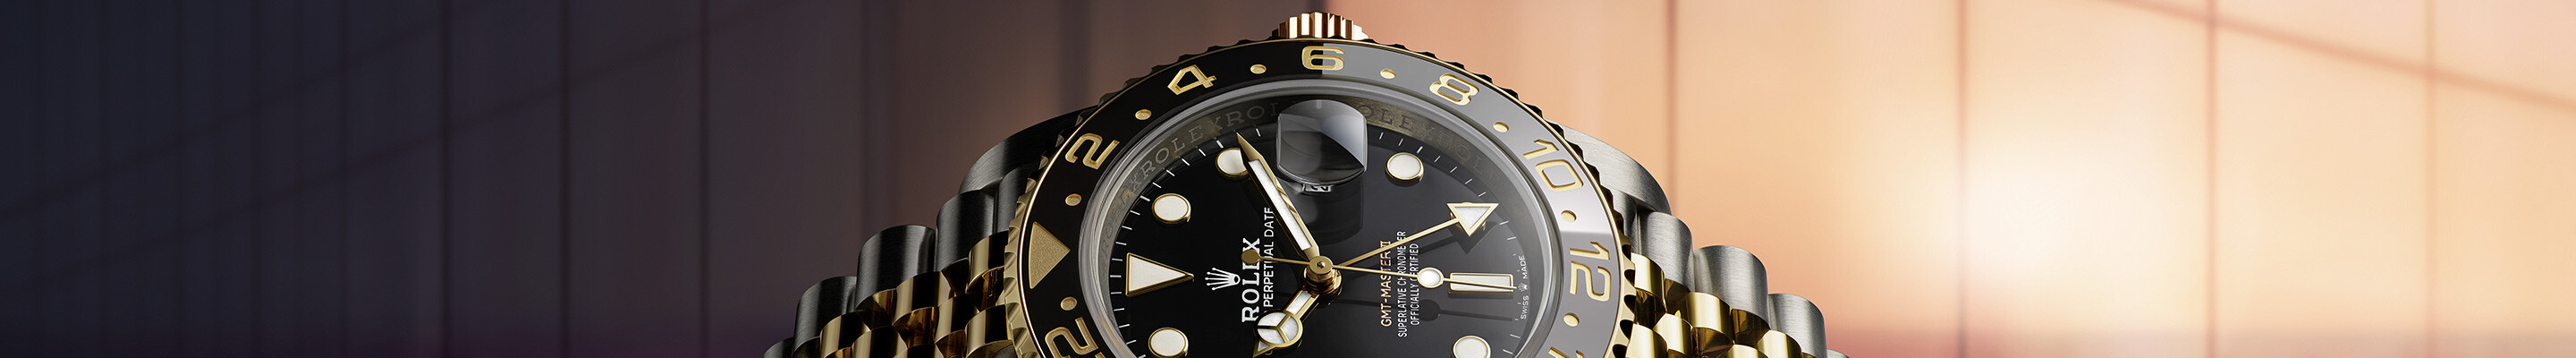 Rolex GMT-Master II chez Boutique Rolex Genève